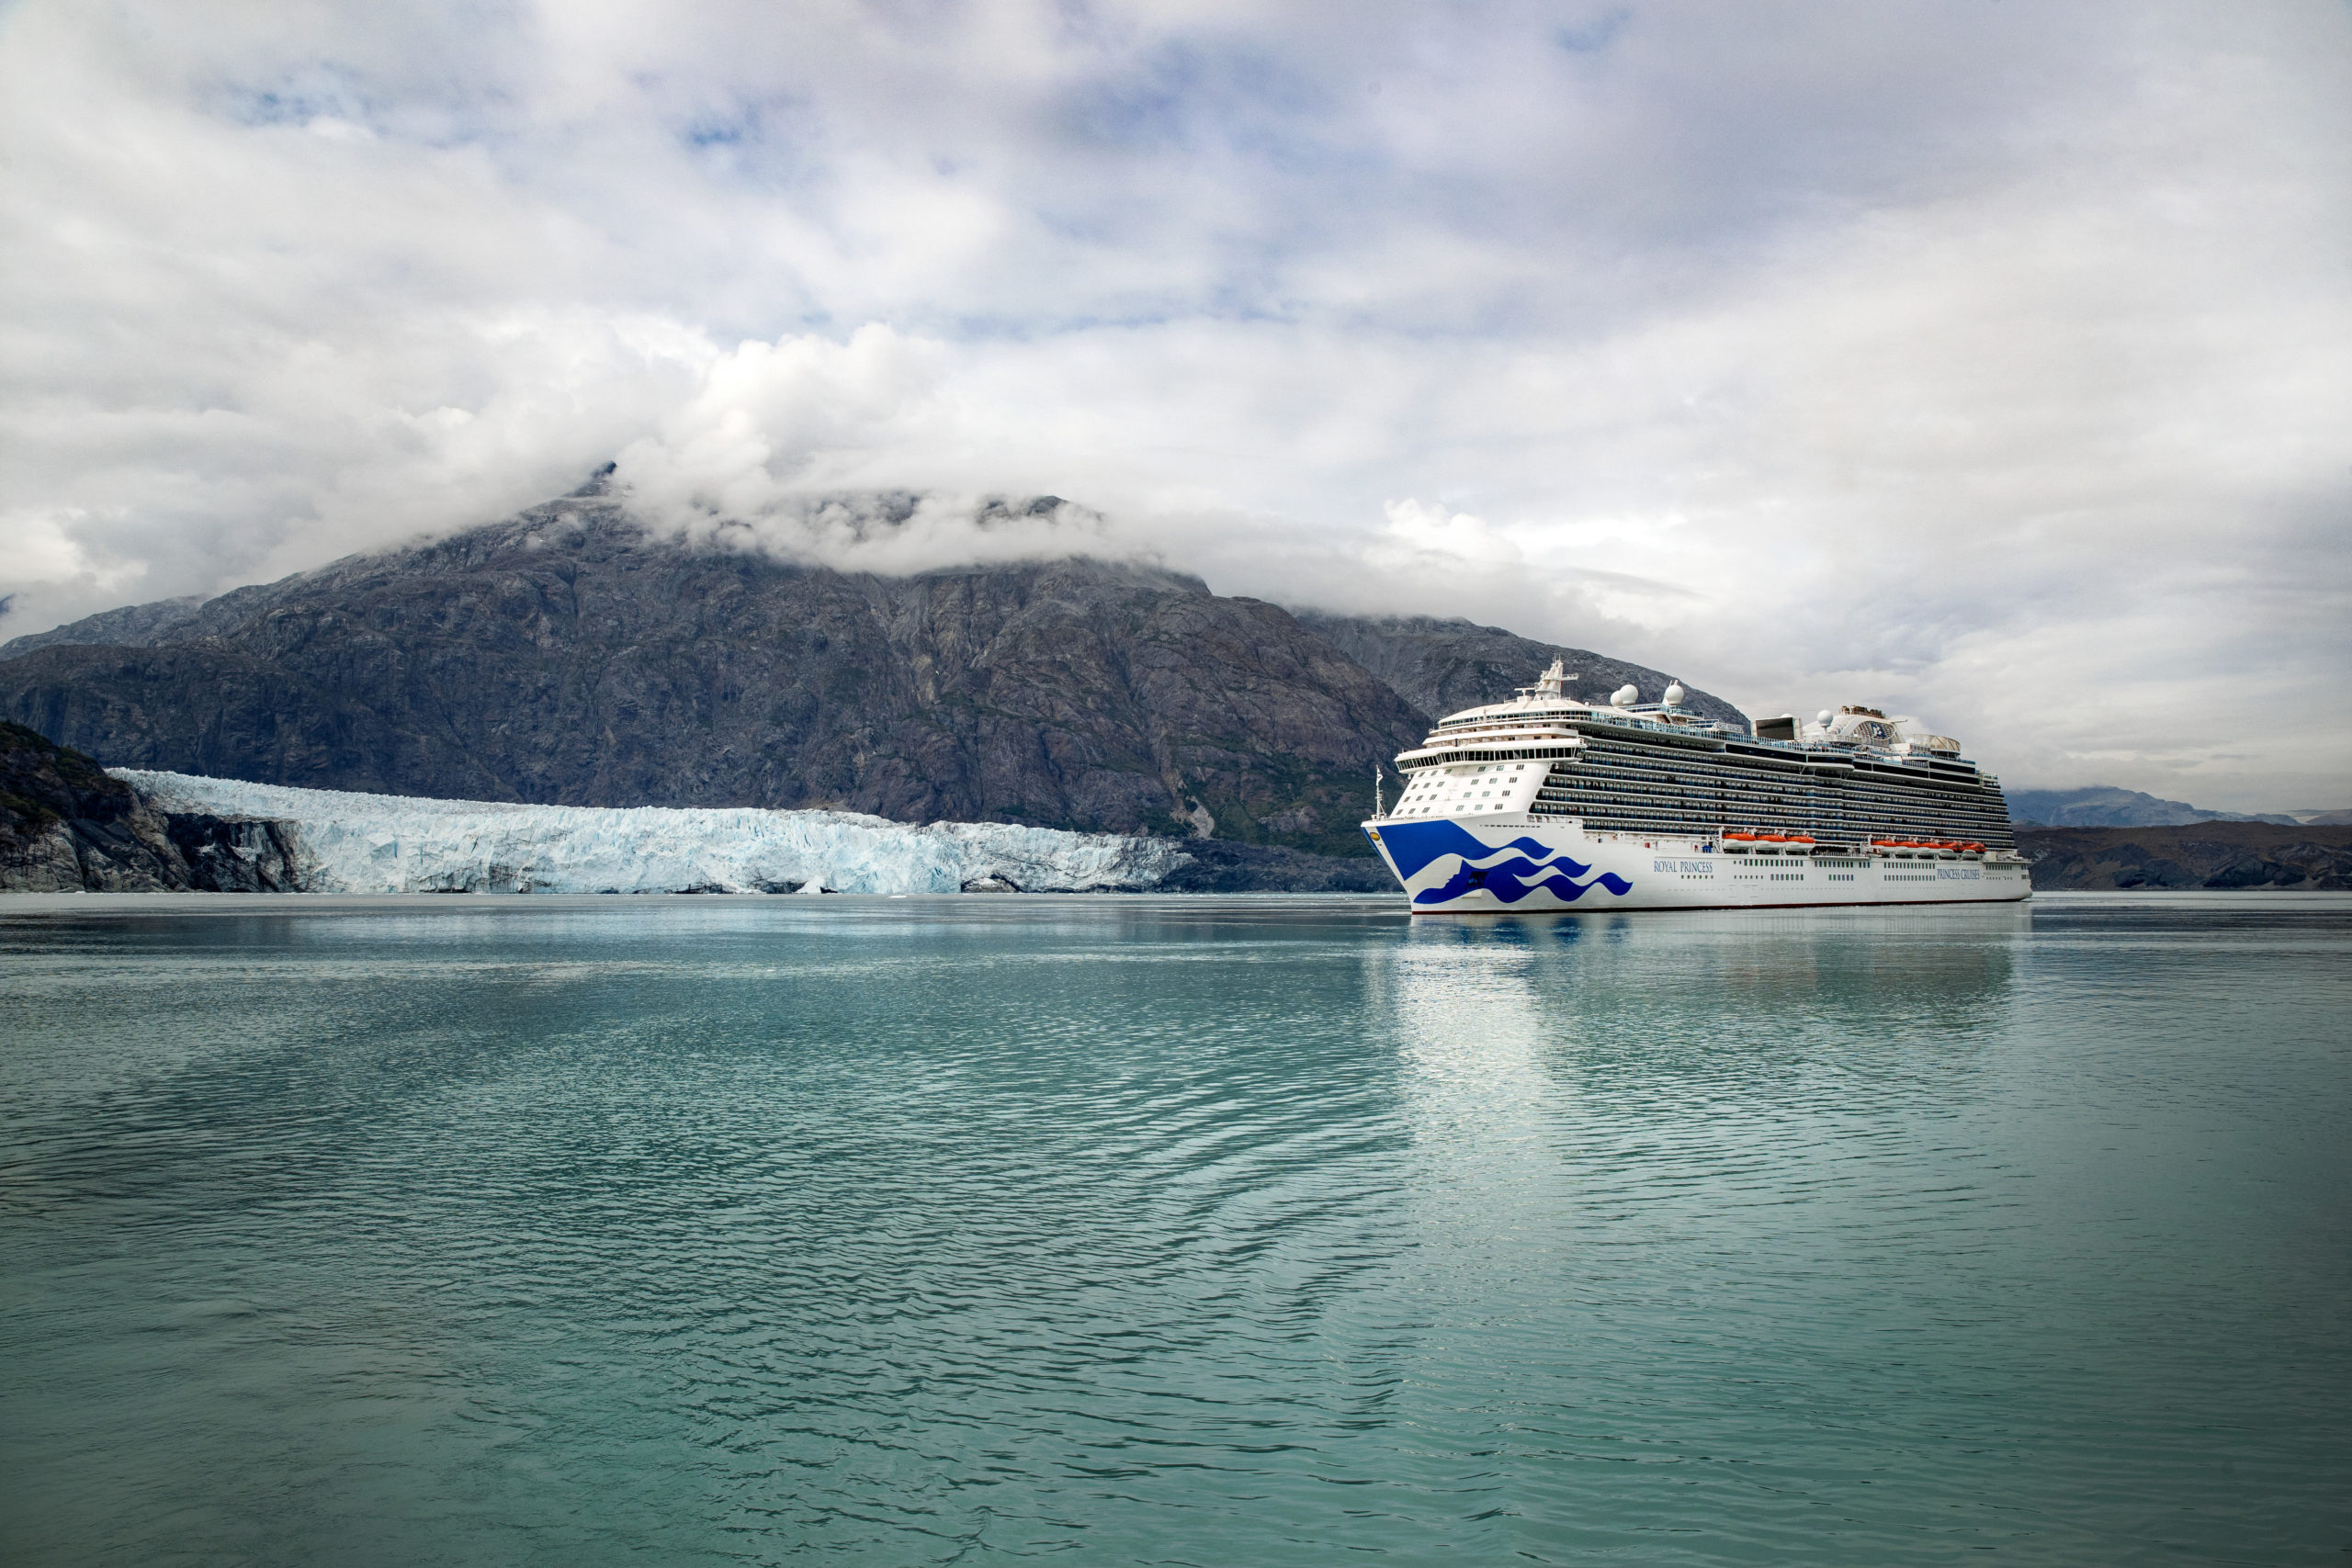 Princess Cruise ship at Glacier Bay, AK